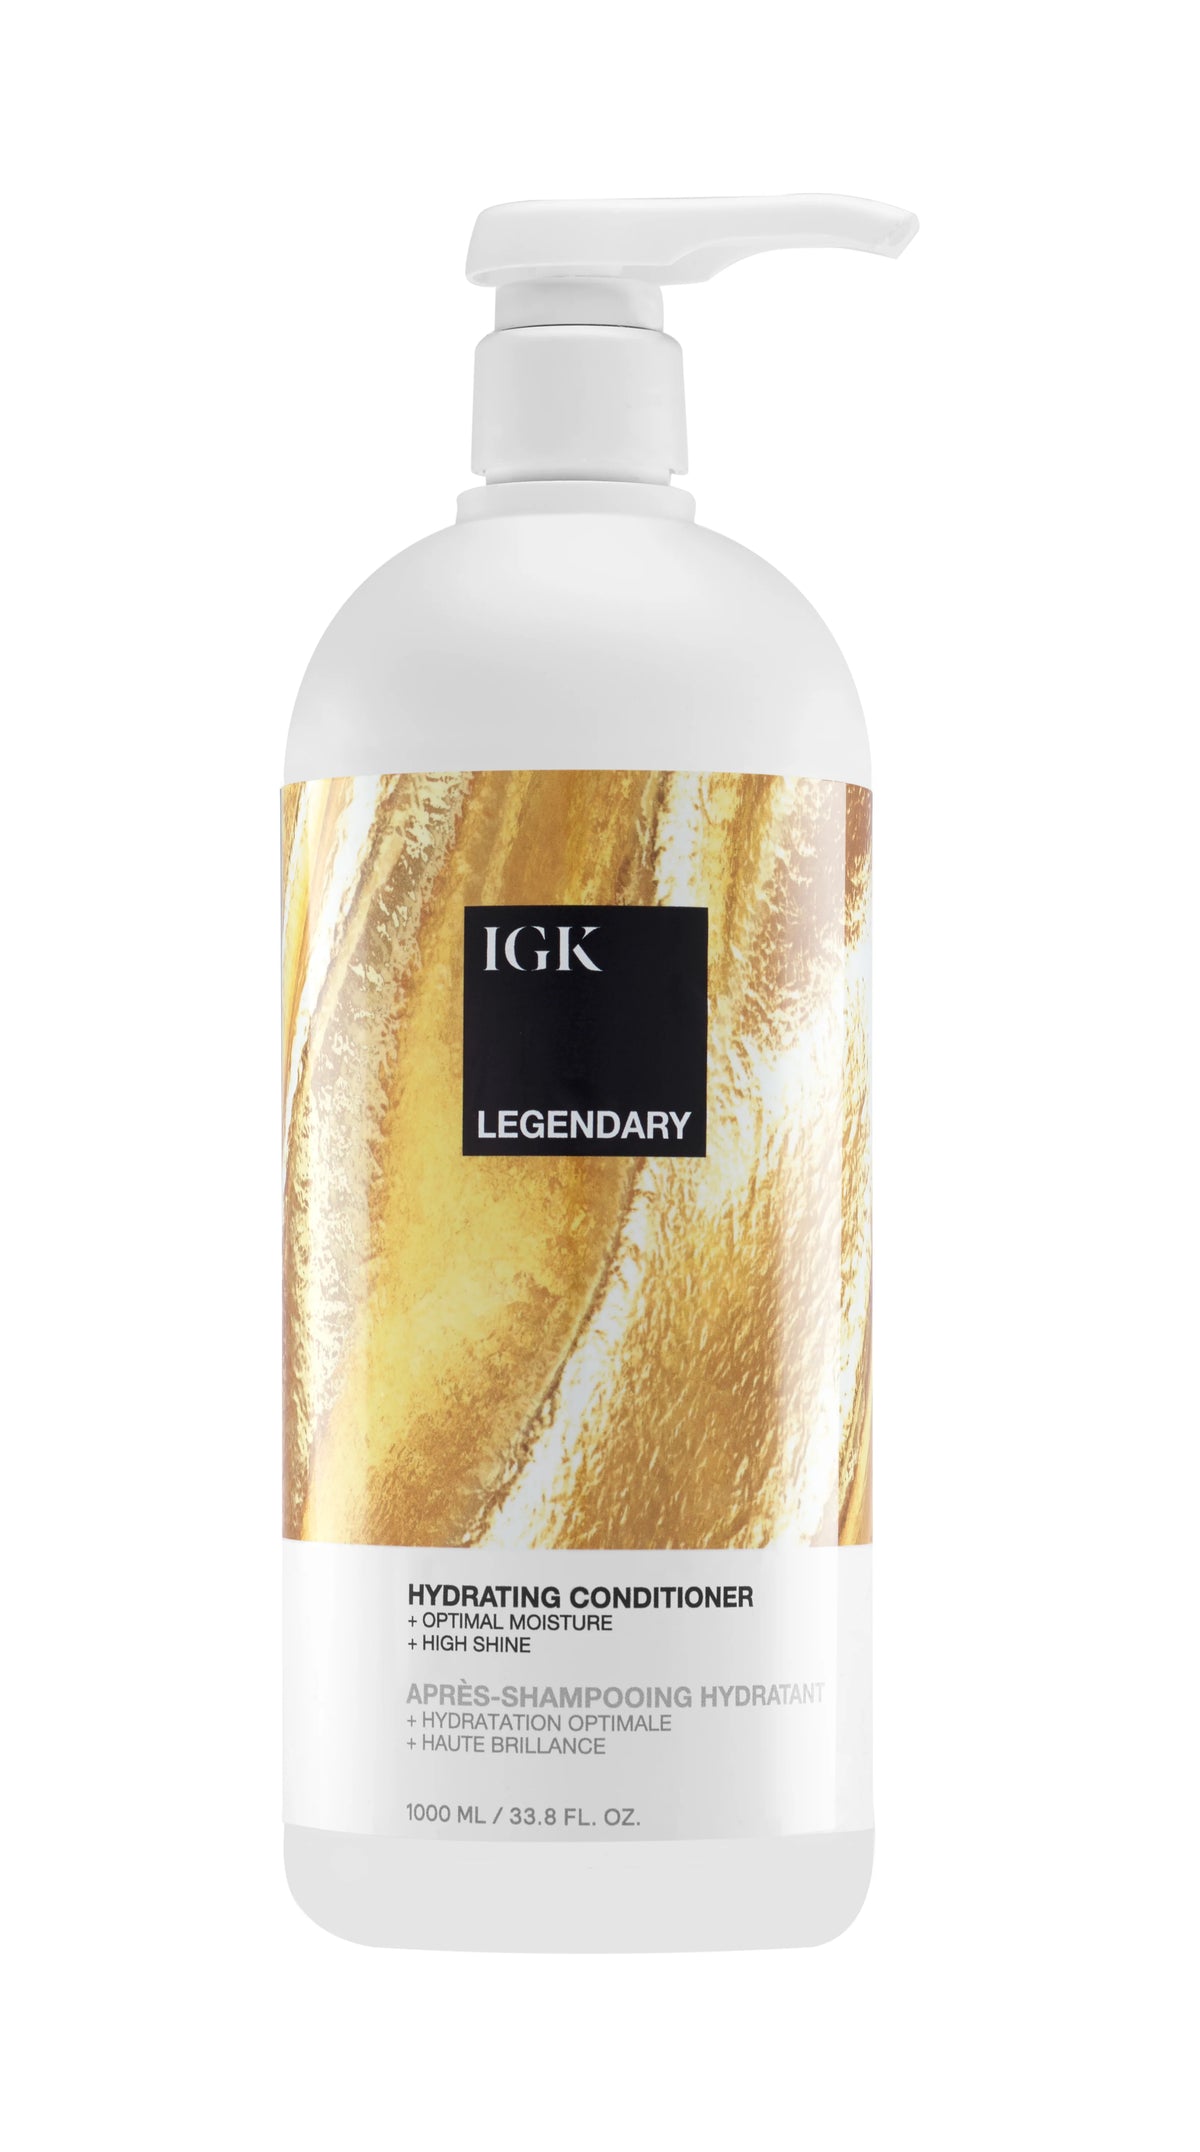 IGK Legendary Dream Conditioner